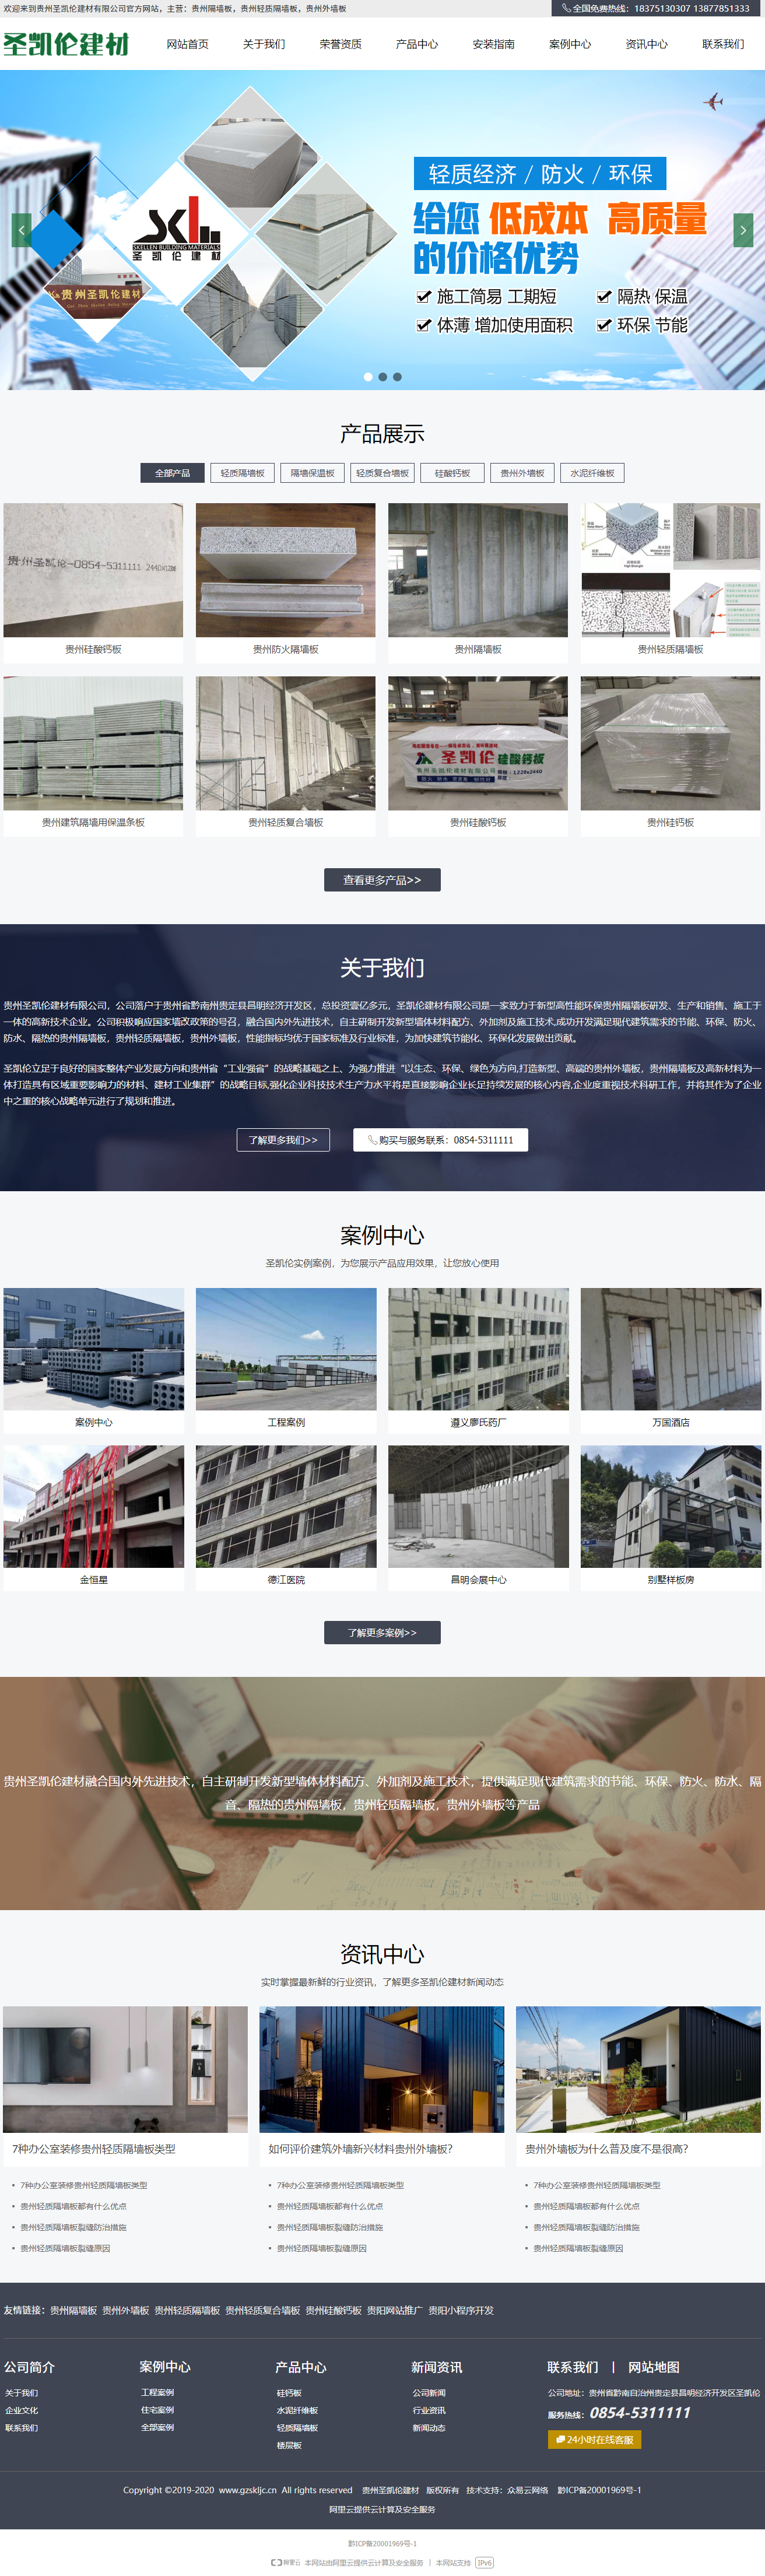 贵州圣凯伦建材有限公司网站案例